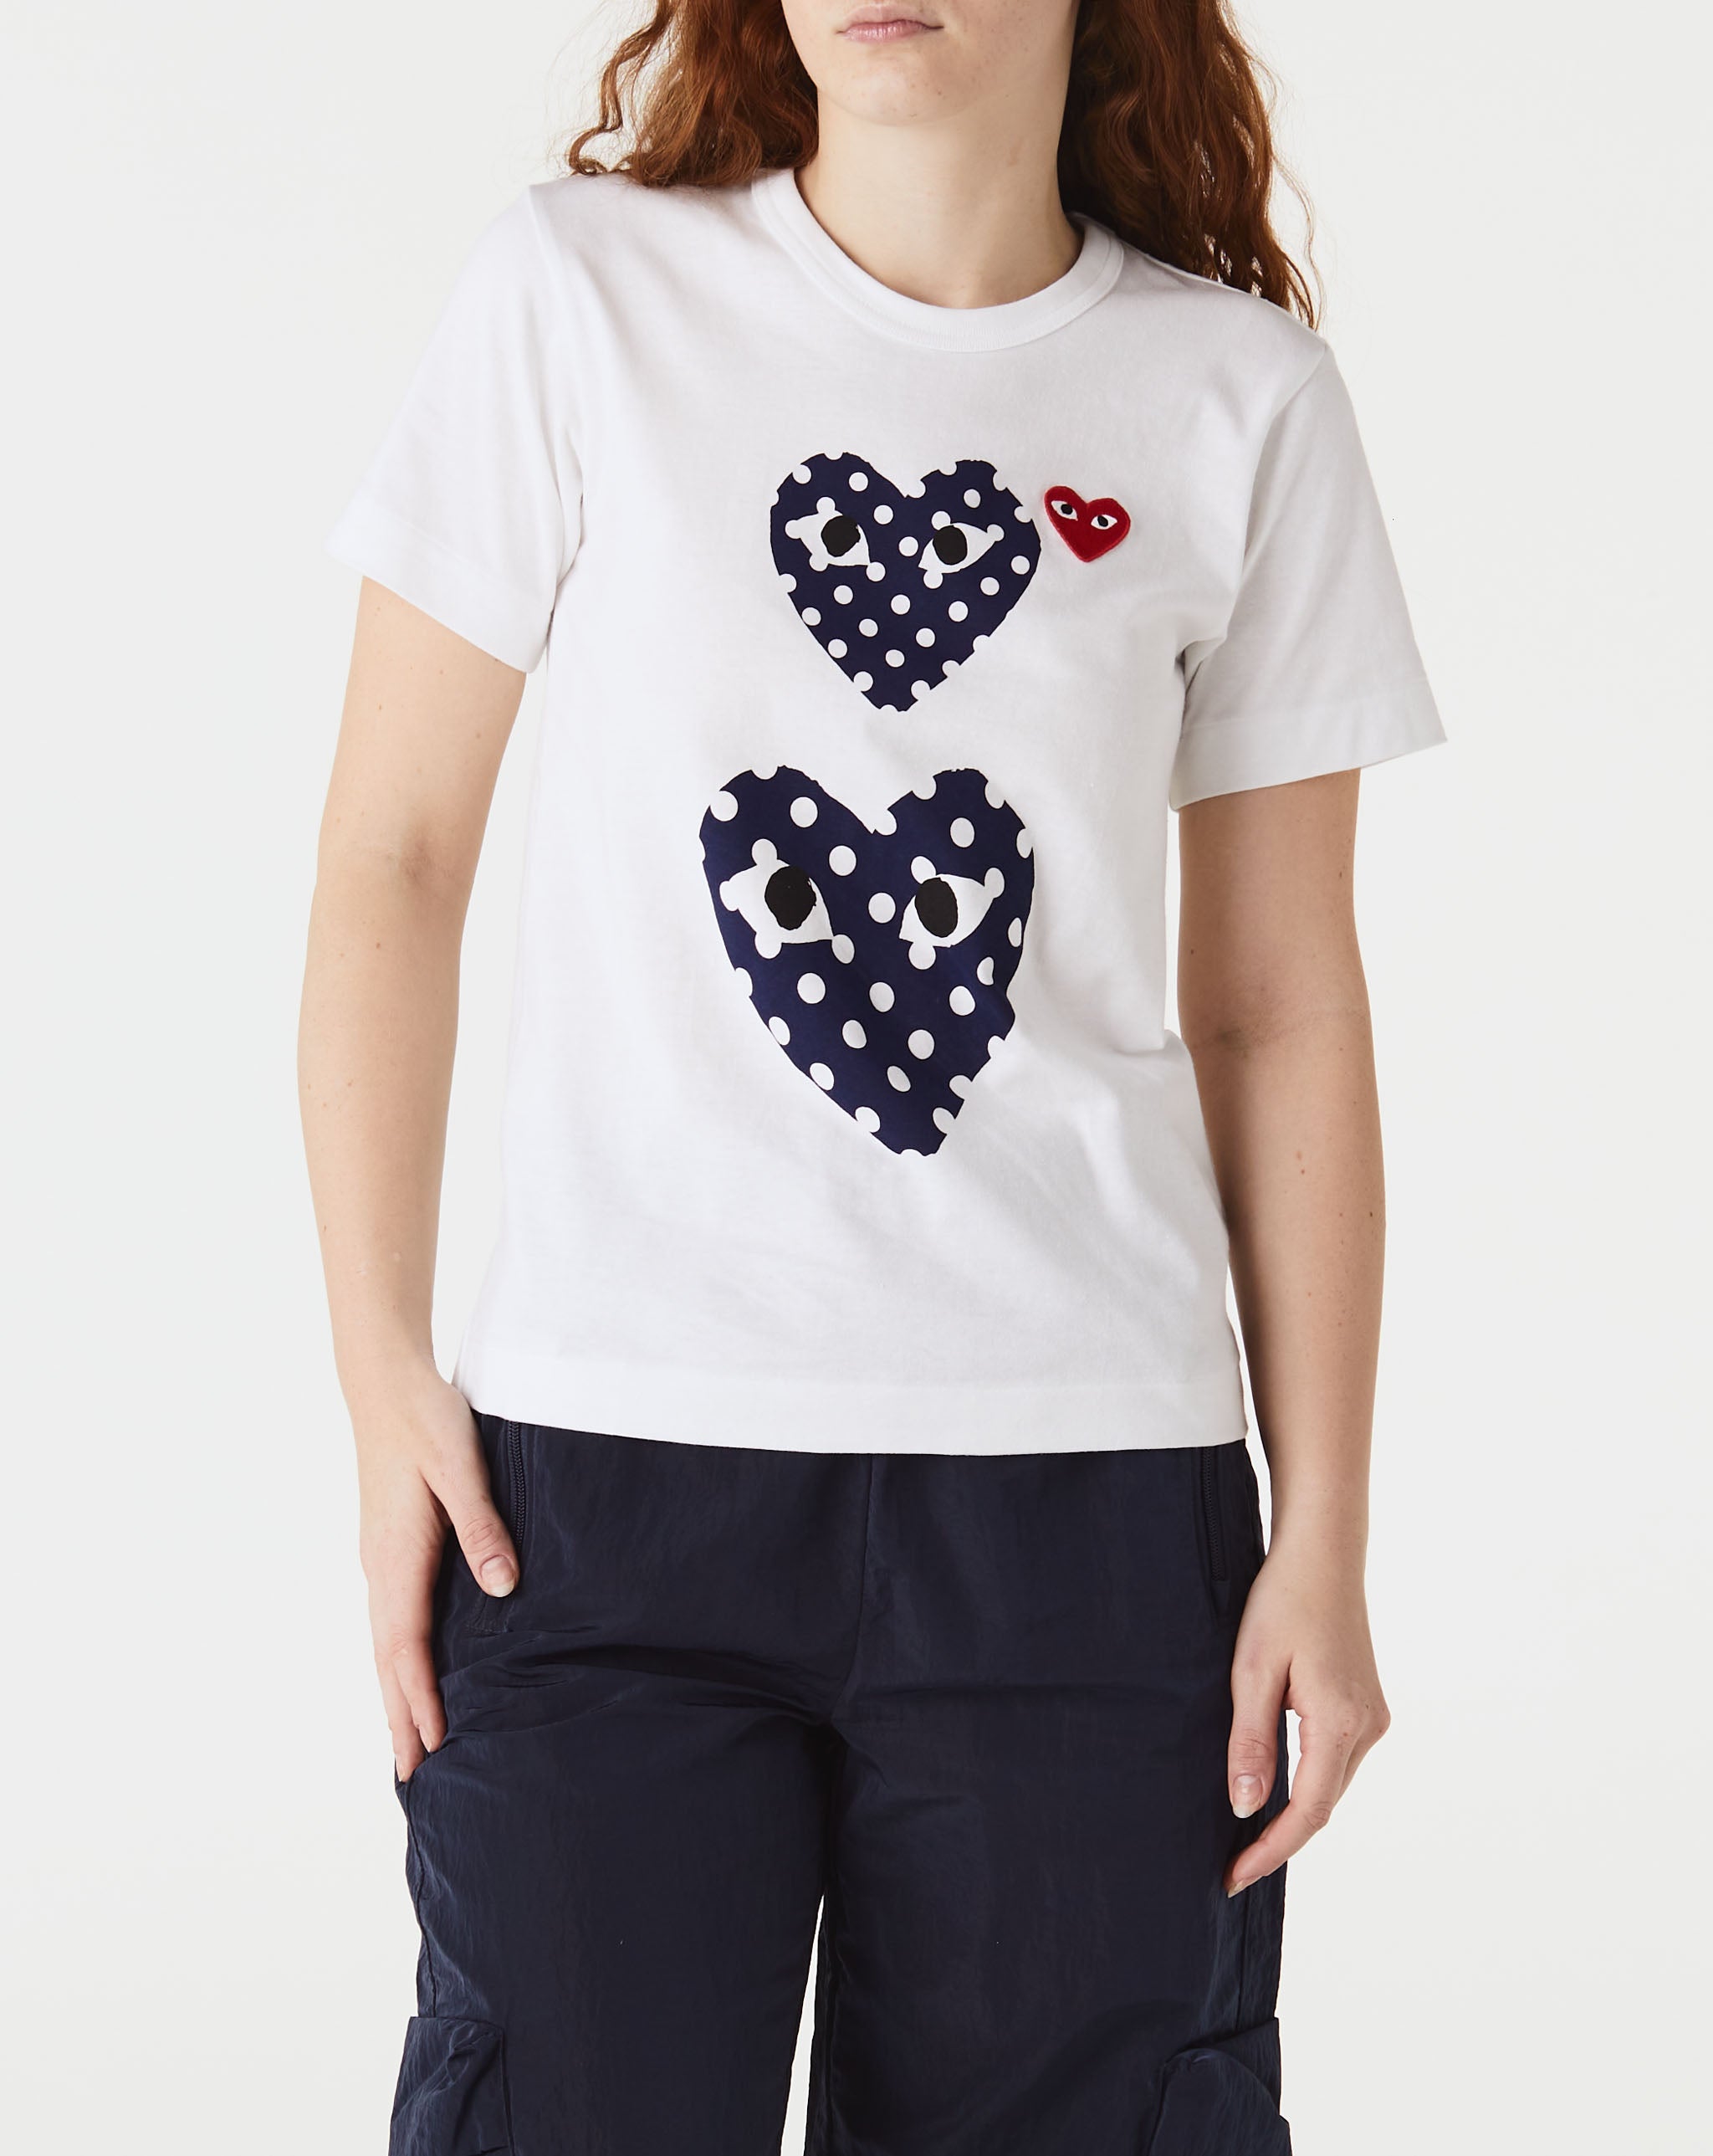 Womens Heart T-Shirt Women's Double Polka Dot Heart T-Shirt  - Cheap Erlebniswelt-fliegenfischen Jordan outlet